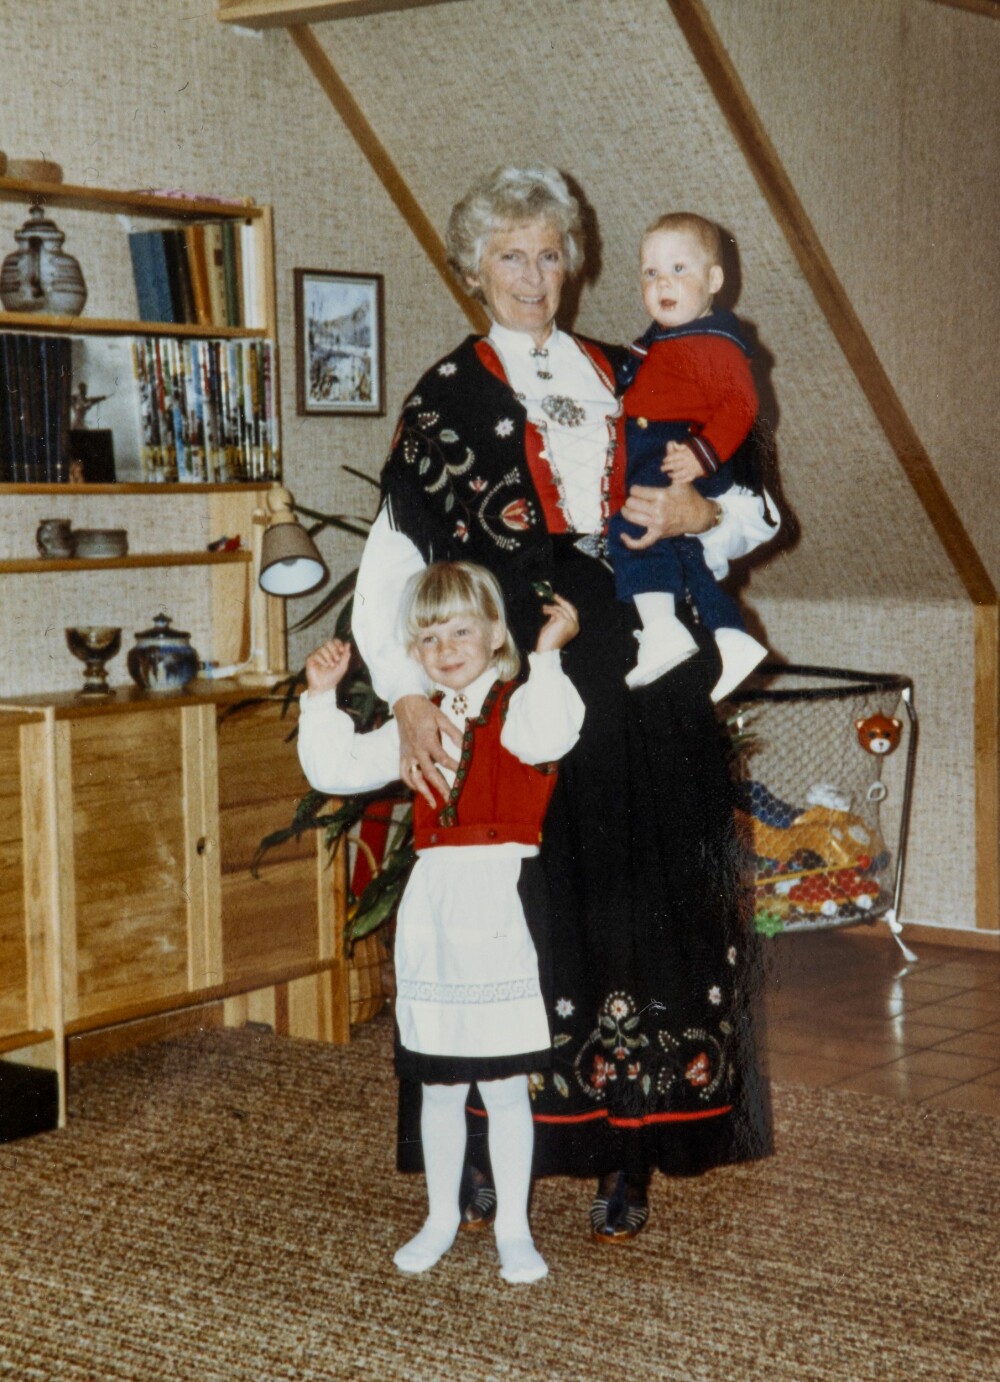 FLOTTE I BUNAD: – Jeg har arvet Rogalandsbunaden til mormor, forteller Kathrine. Her med mormor og lillebror Yngve.